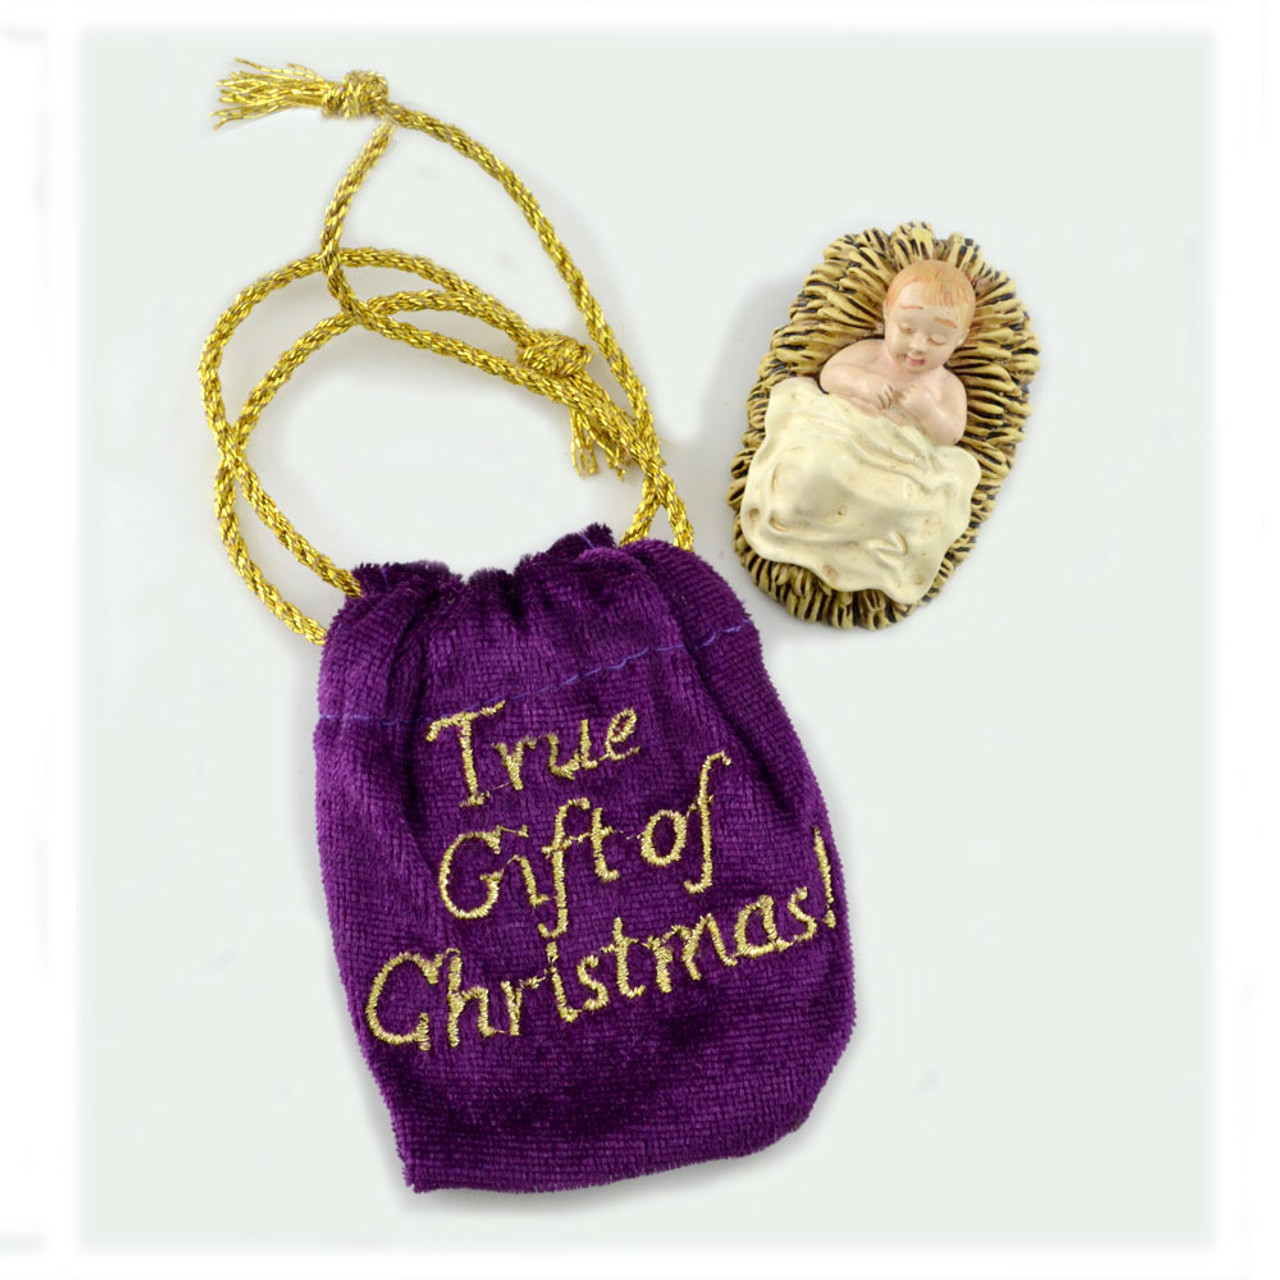 True Gift of Christmas: Baby Jesus in Purple Bag